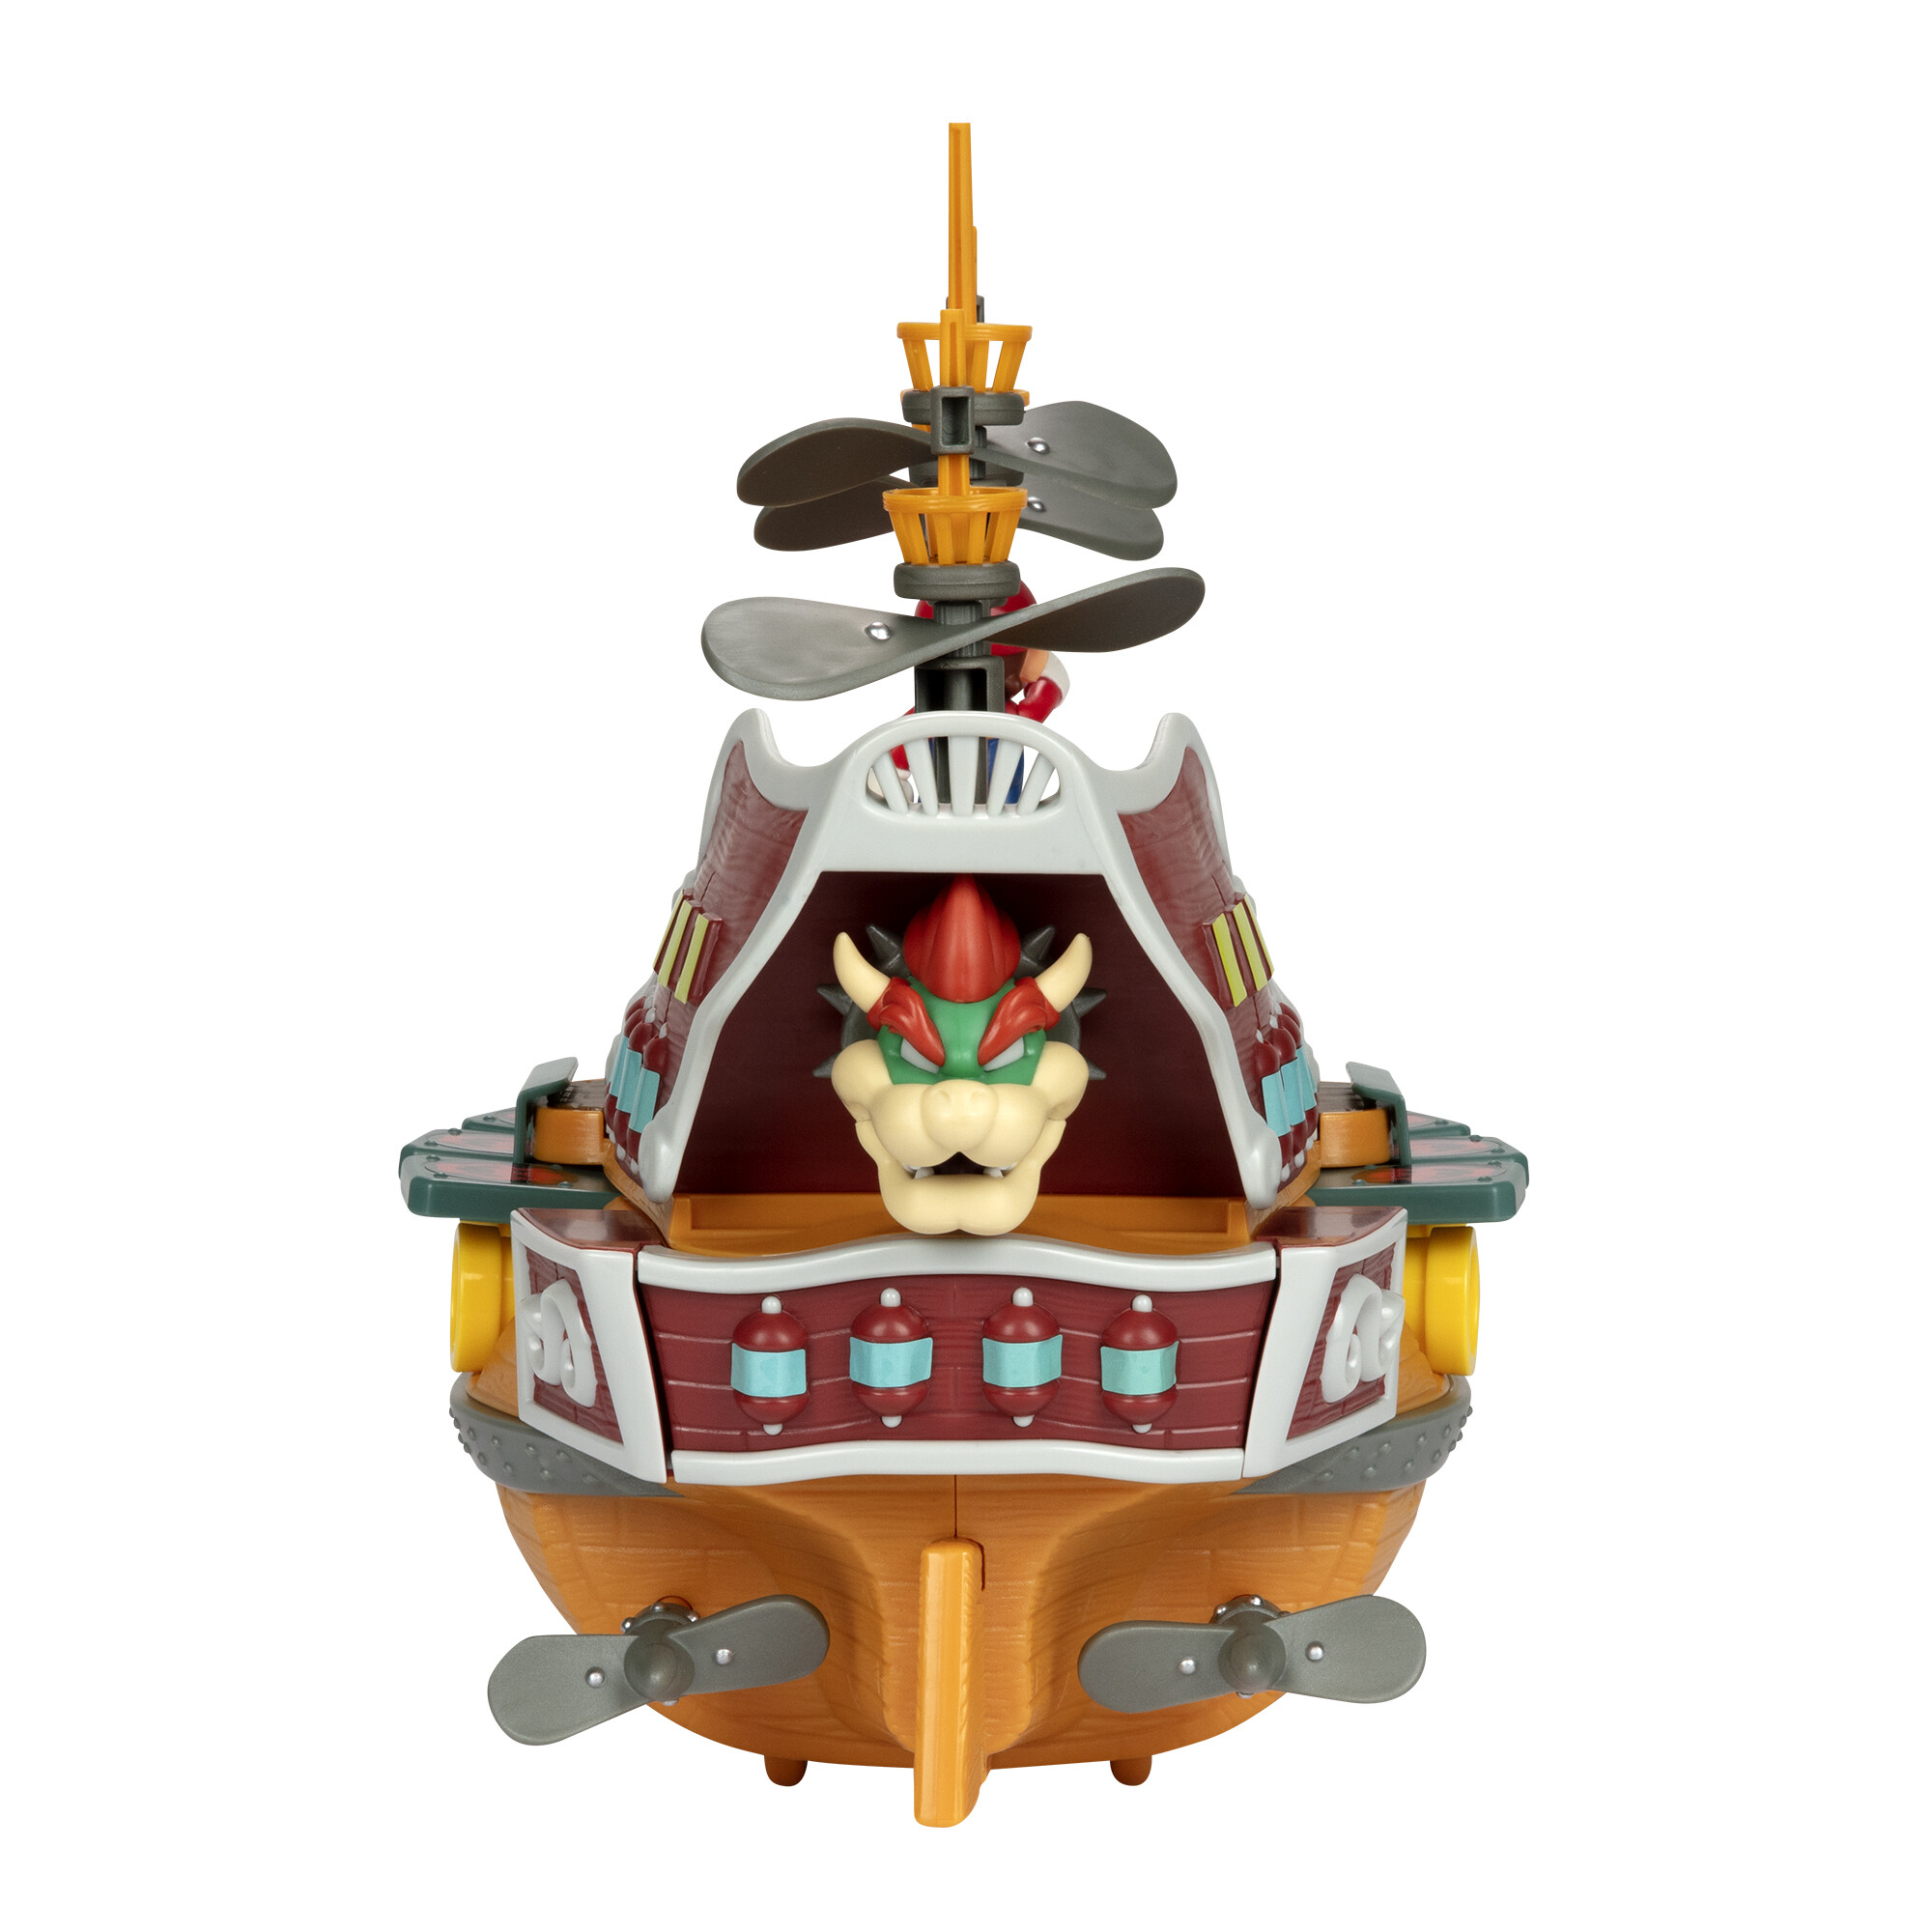 Super mario galeone volante di bowser con 5 personaggi articoati estremamente dettagliati - Super Mario